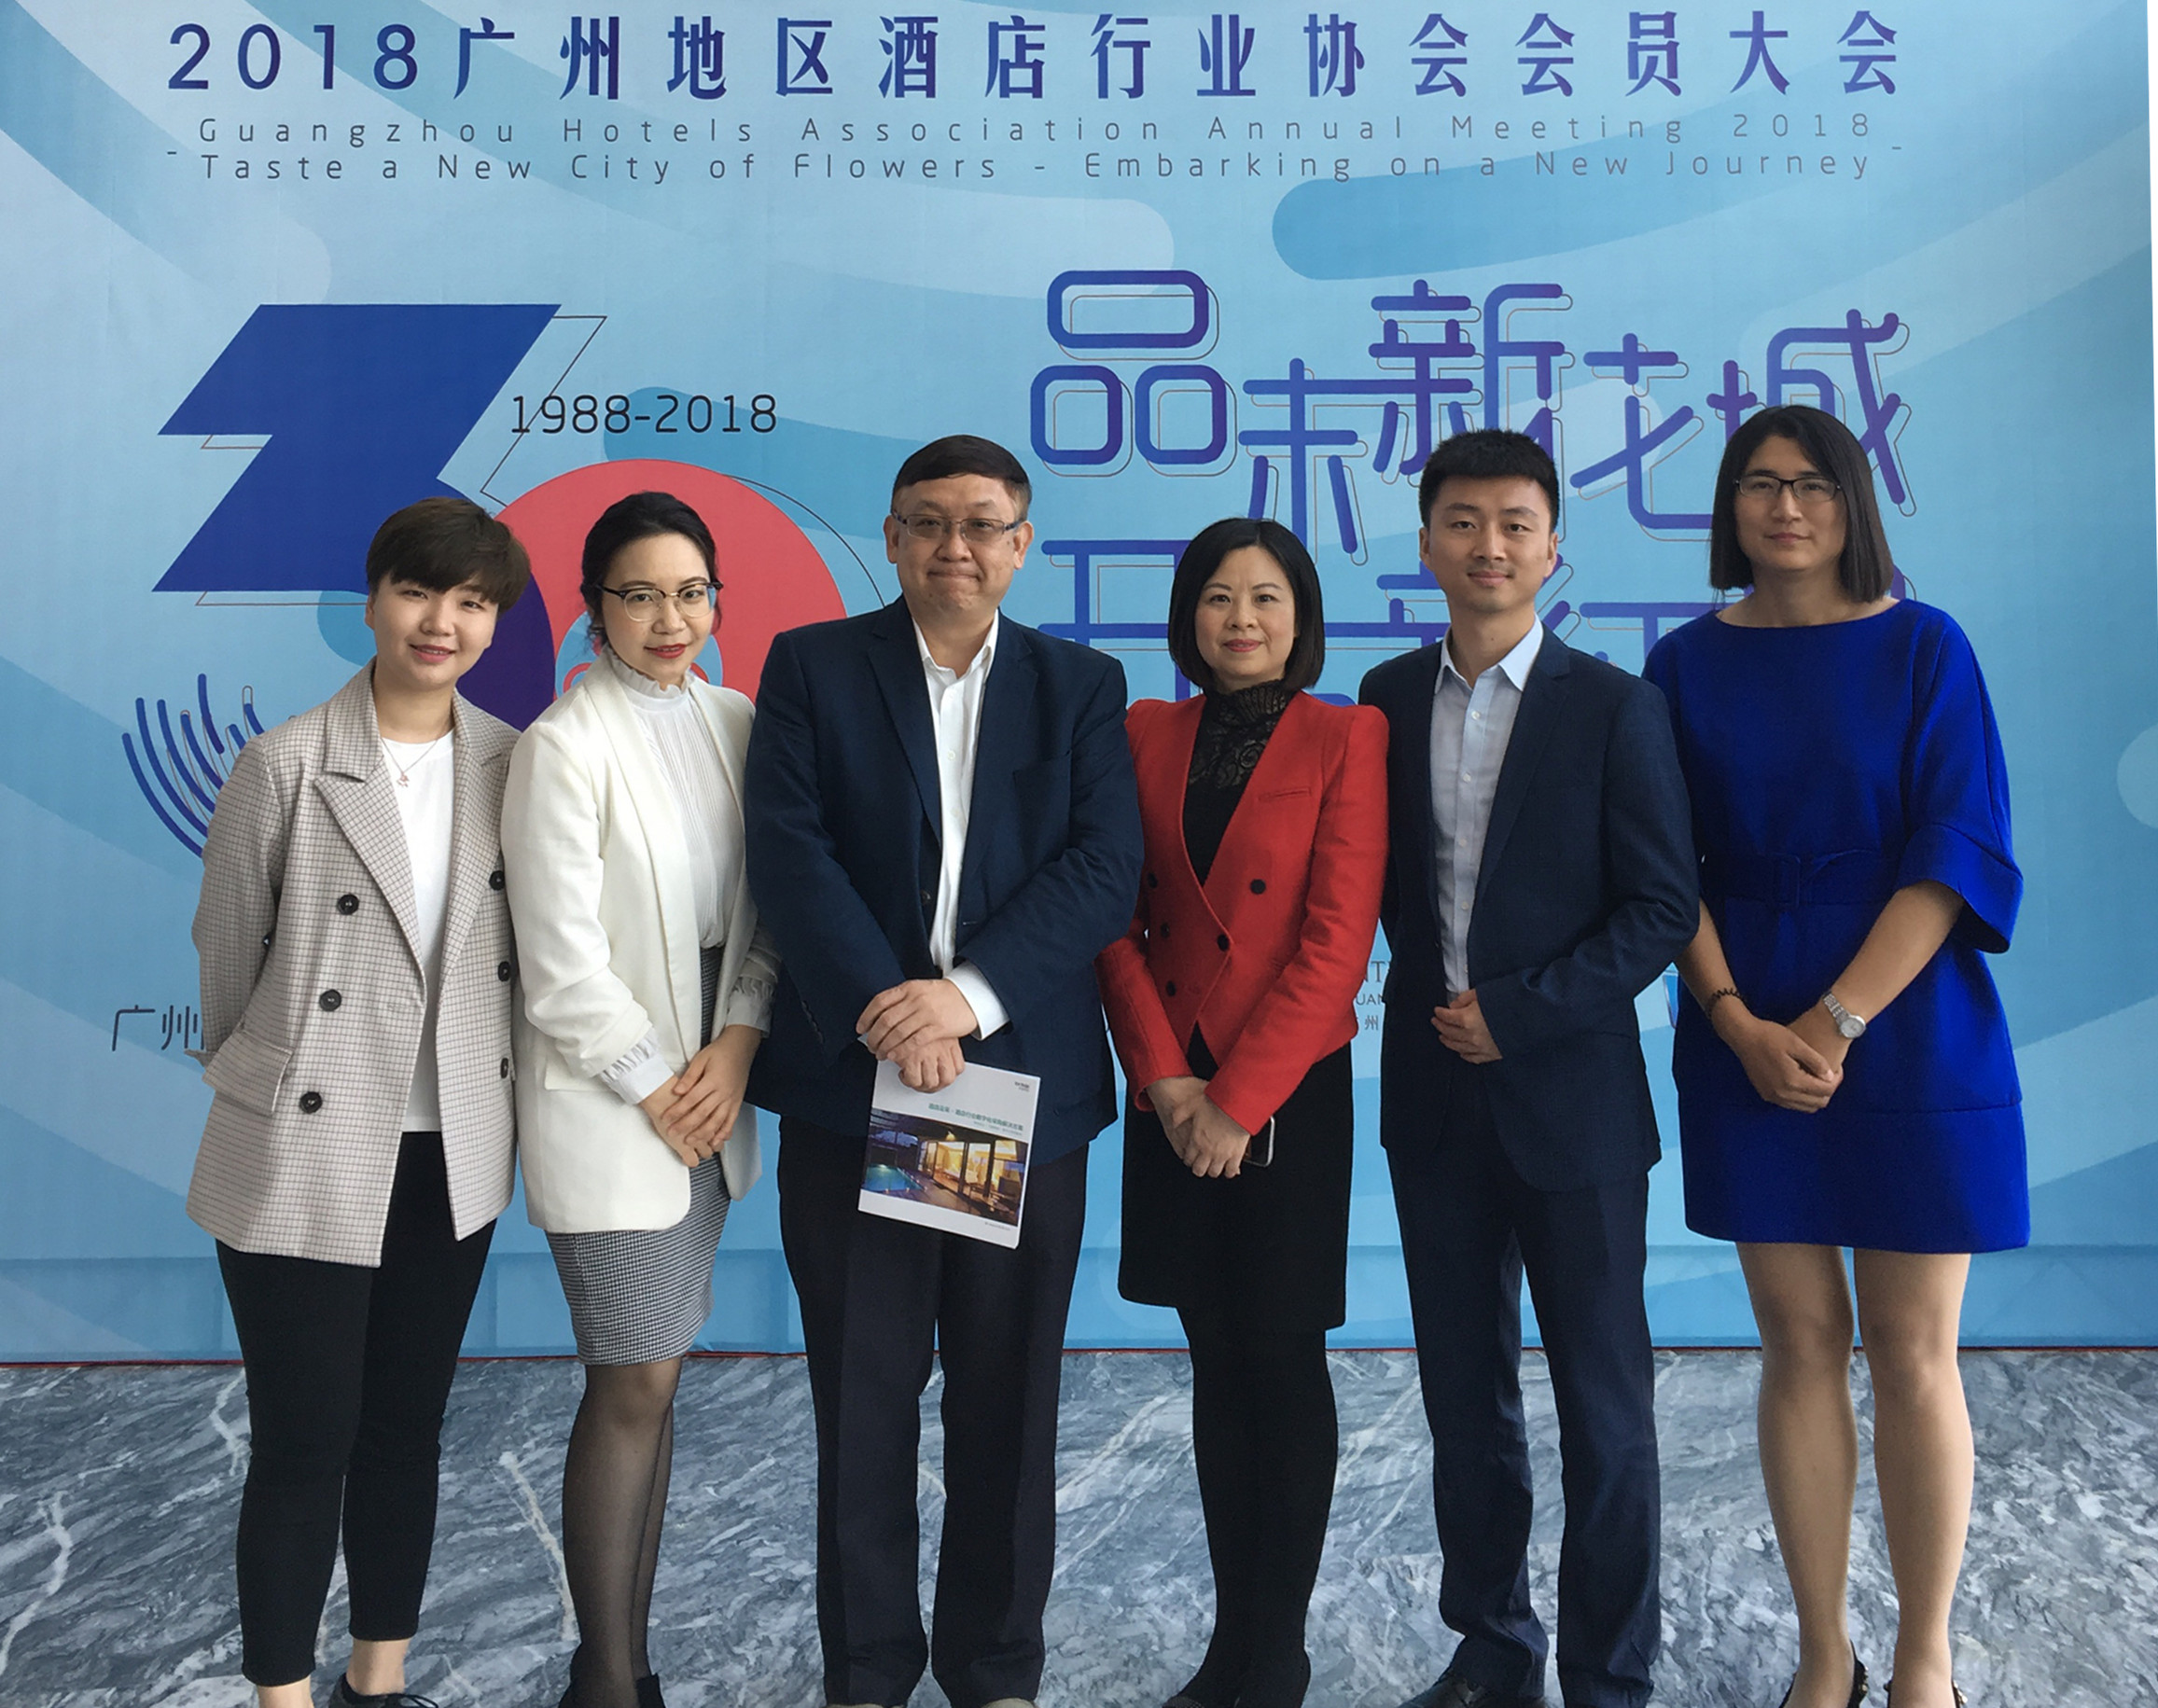 熵易团队参与2018广州地区酒店行业协会会员大会1